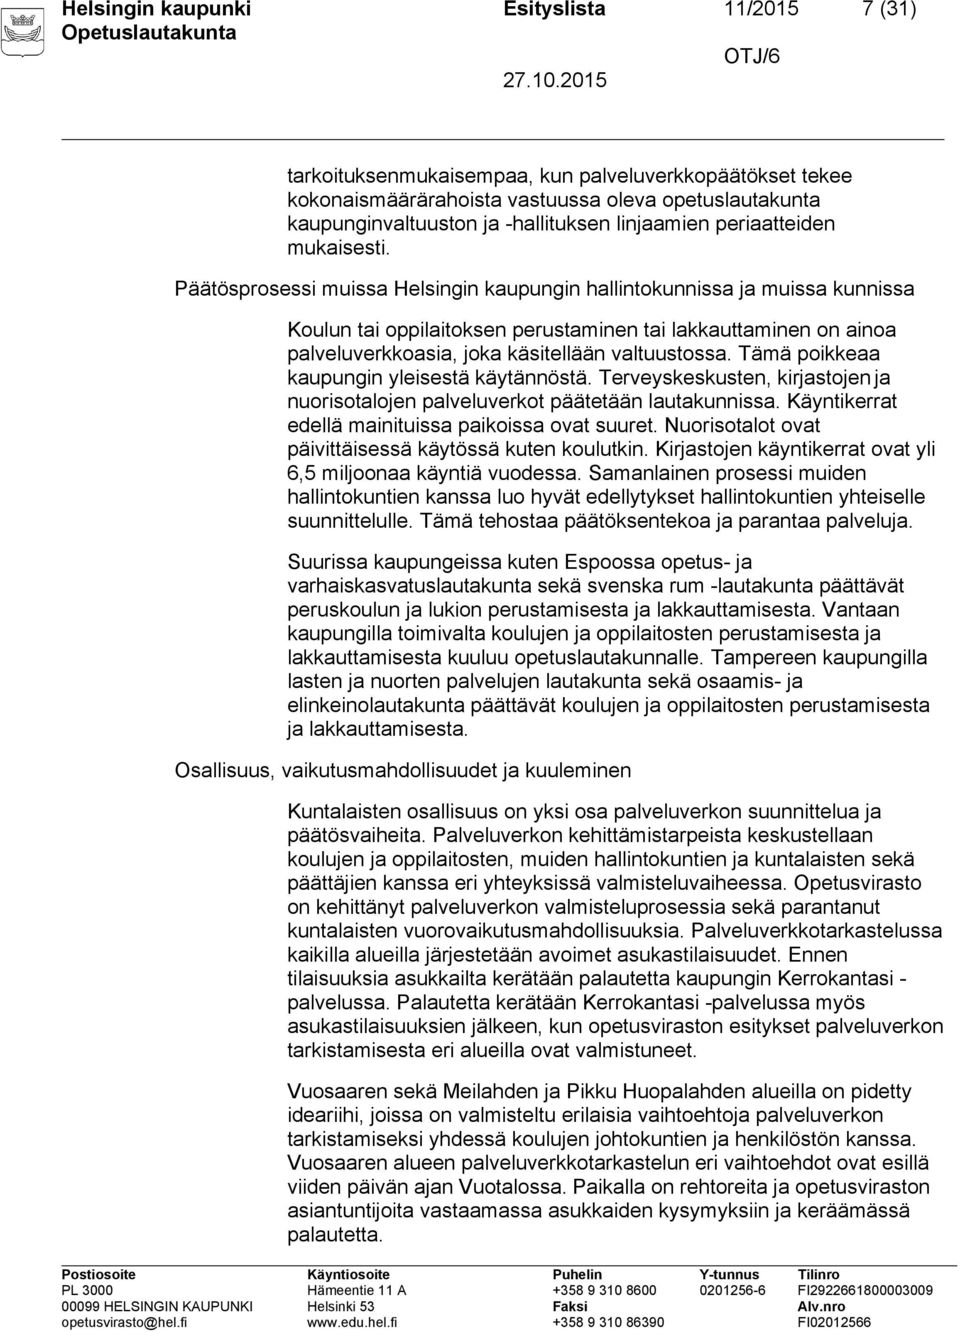 Päätösprosessi muissa Helsingin kaupungin hallintokunnissa ja muissa kunnissa Koulun tai oppilaitoksen perustaminen tai lakkauttaminen on ainoa palveluverkkoasia, joka käsitellään valtuustossa.